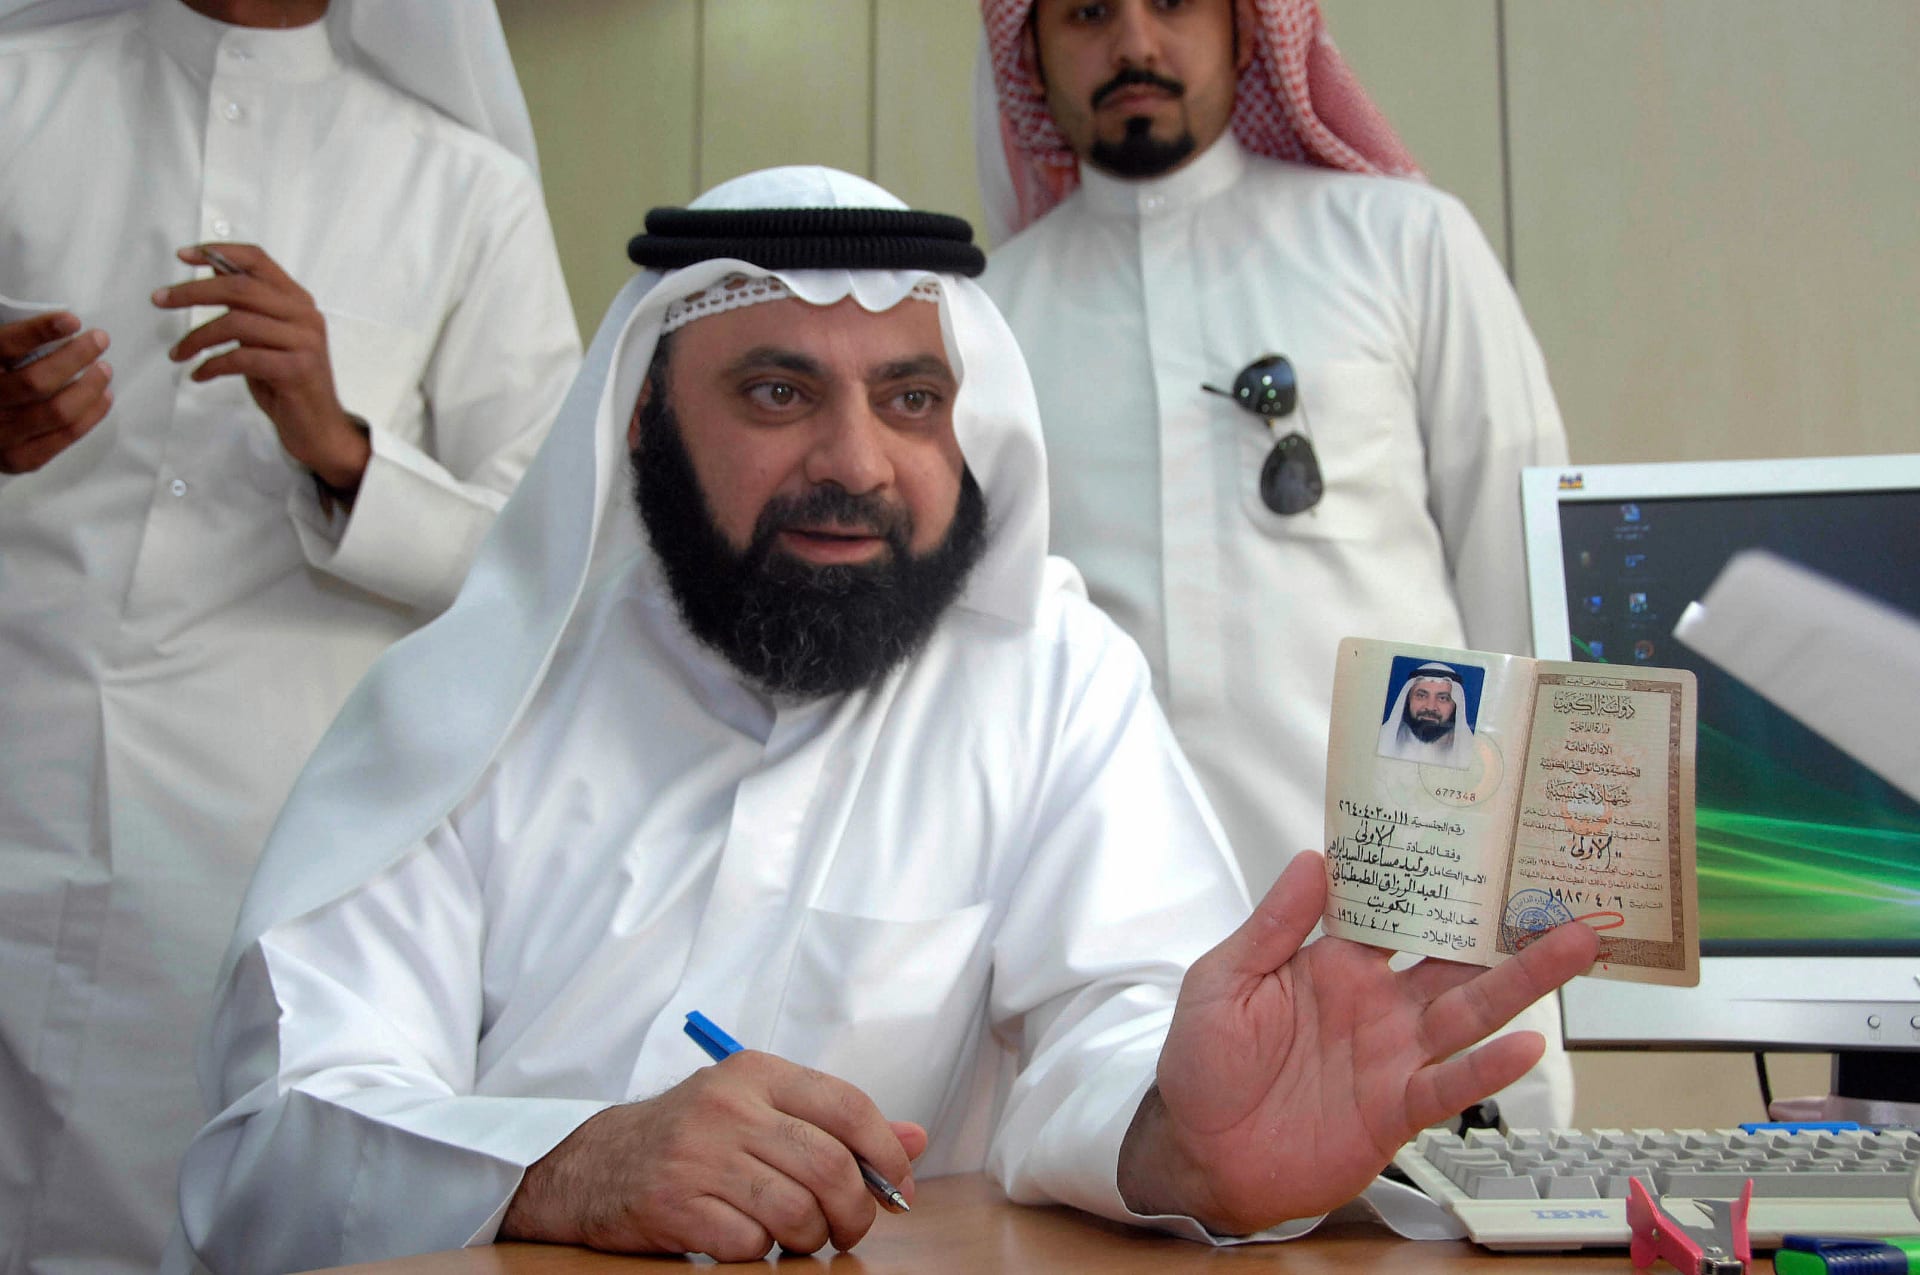 الطبطبائي يوضح تغريدته عن "مؤسسات السعودية ملك للأمة وليس عائلة حاكمة"